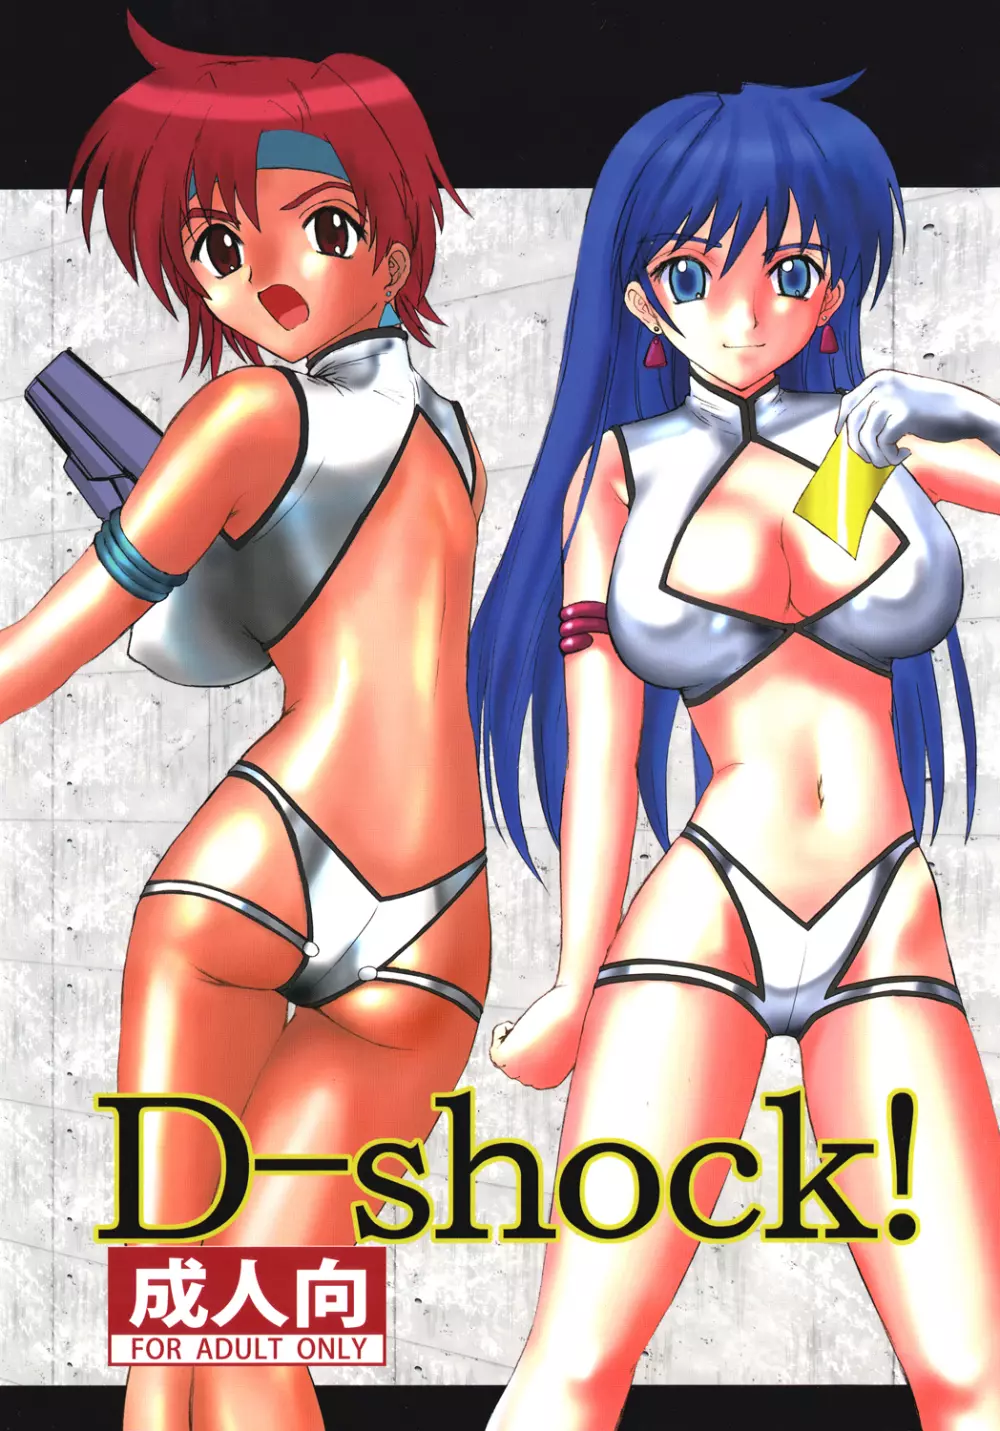 D-shock!